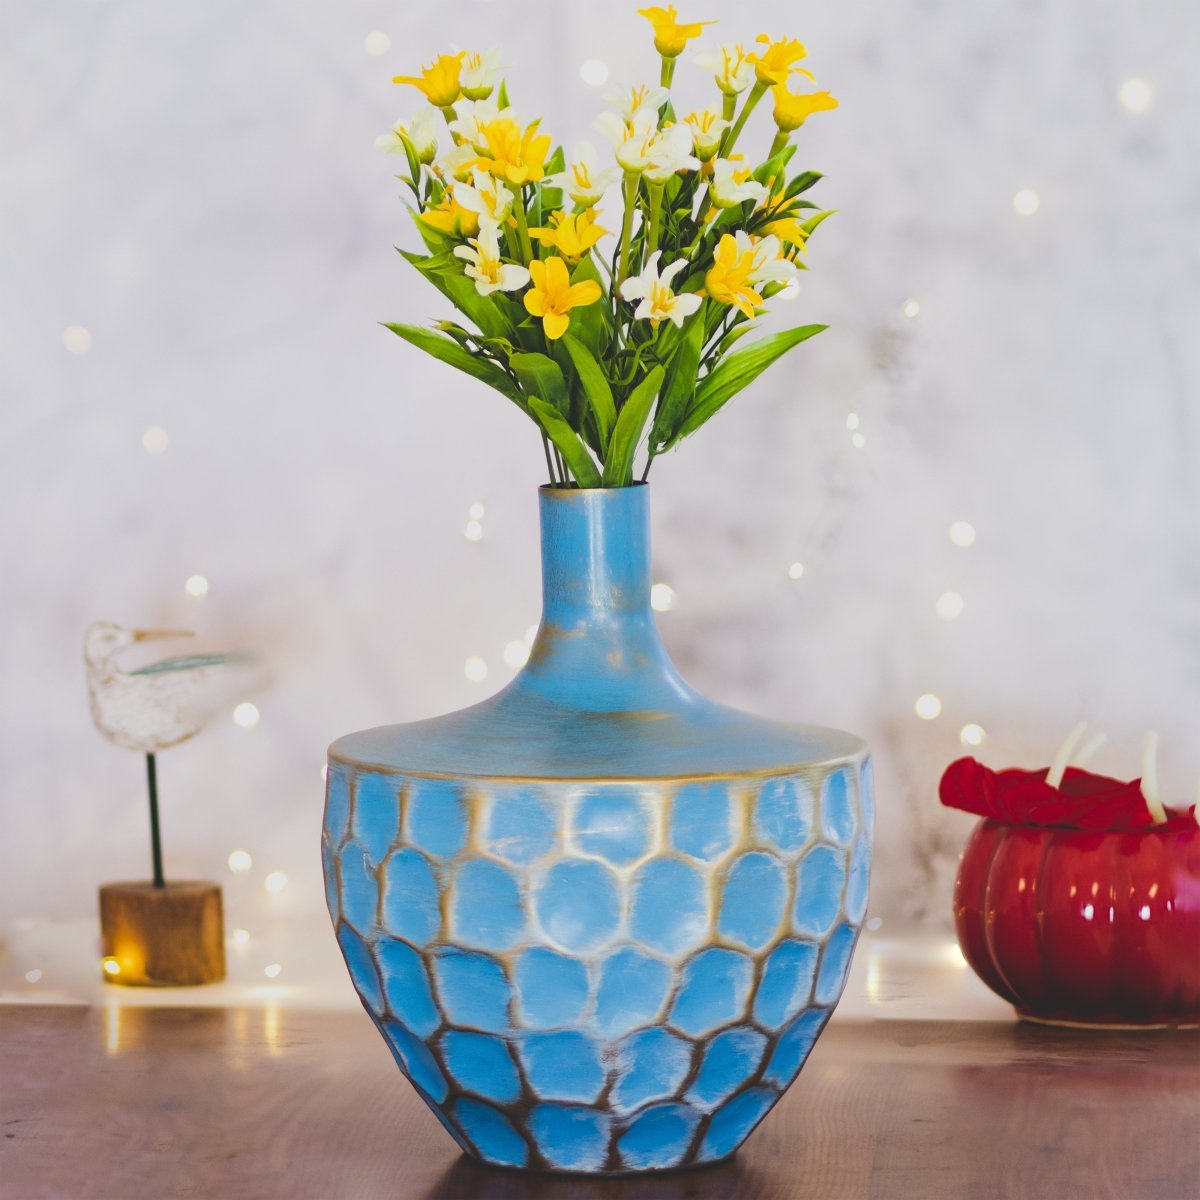 Kezevel Metal Decorative Vase - Golden Blue Honeycomb Pattern Handcrafted Metal Flower Vases for Home Decor, Metal Planter